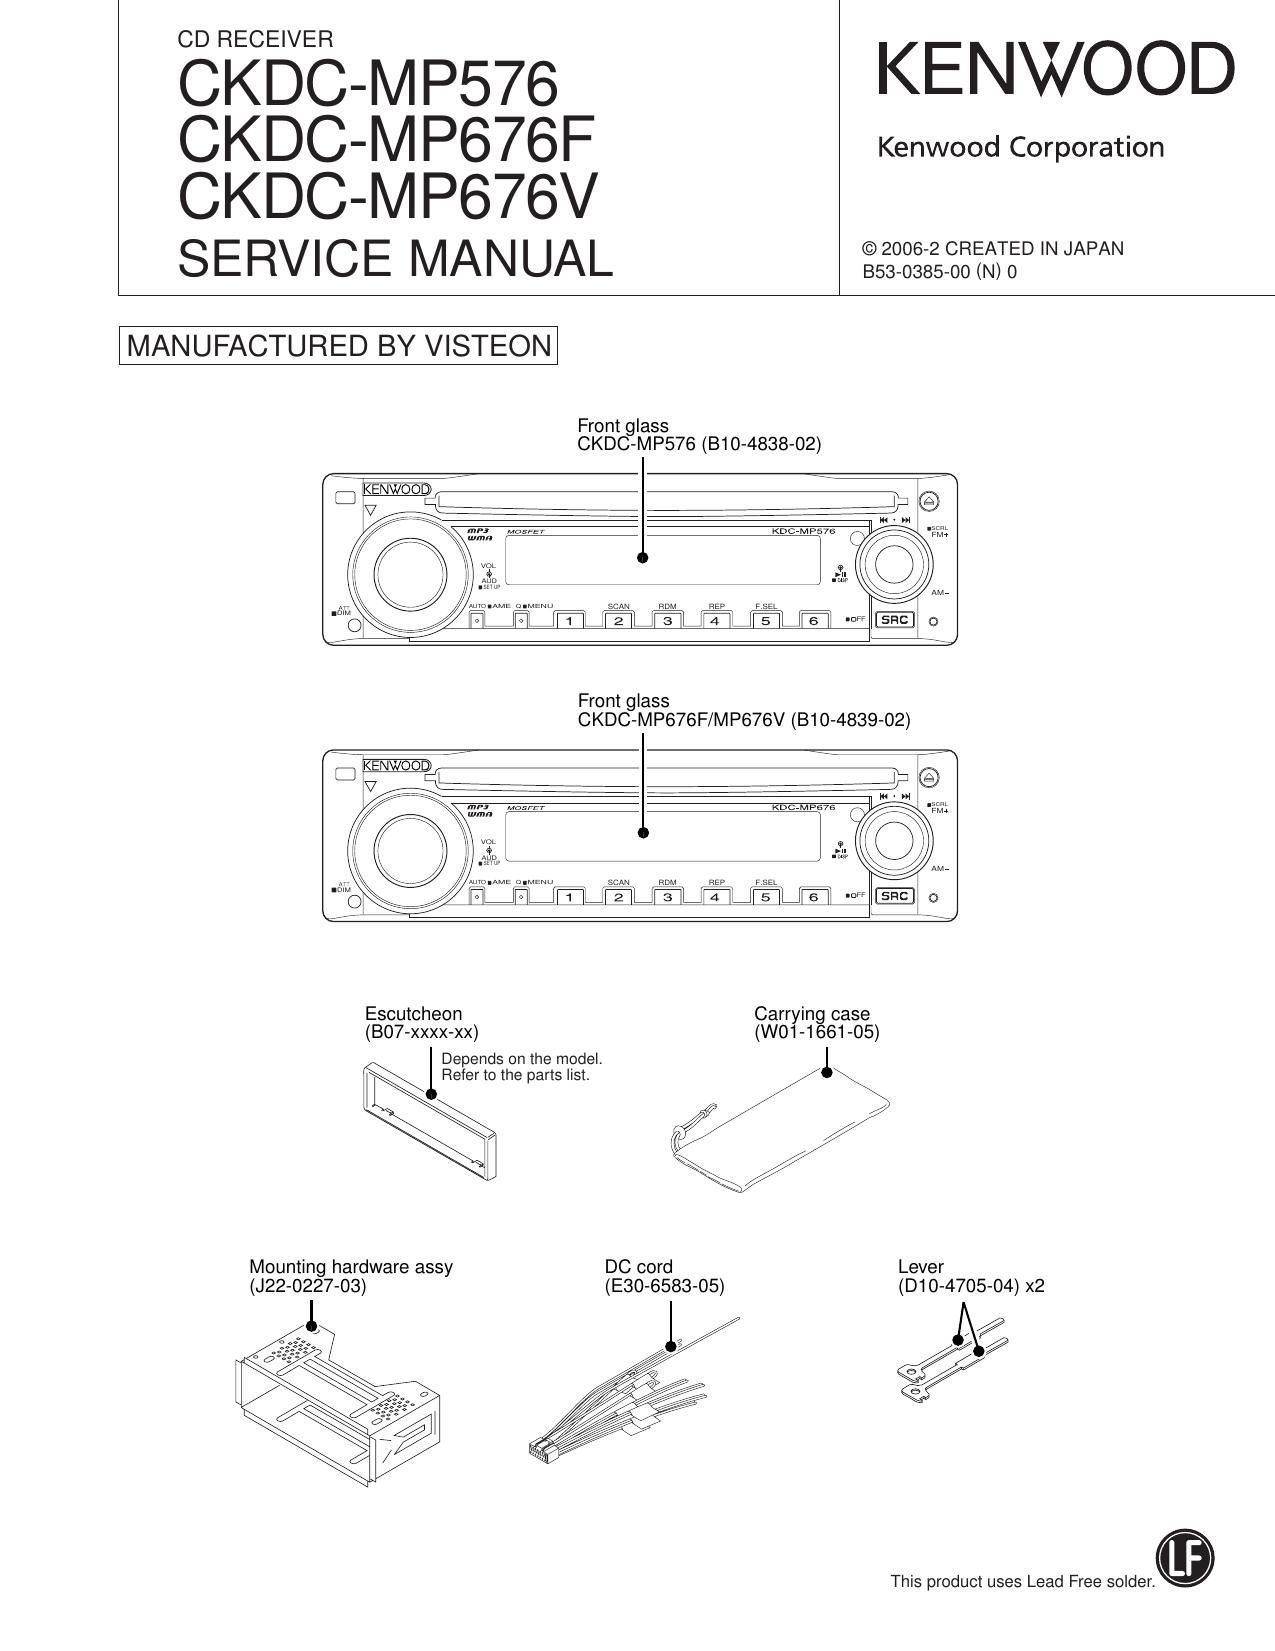 Kenwood CKDC MP 676 V Service Manual